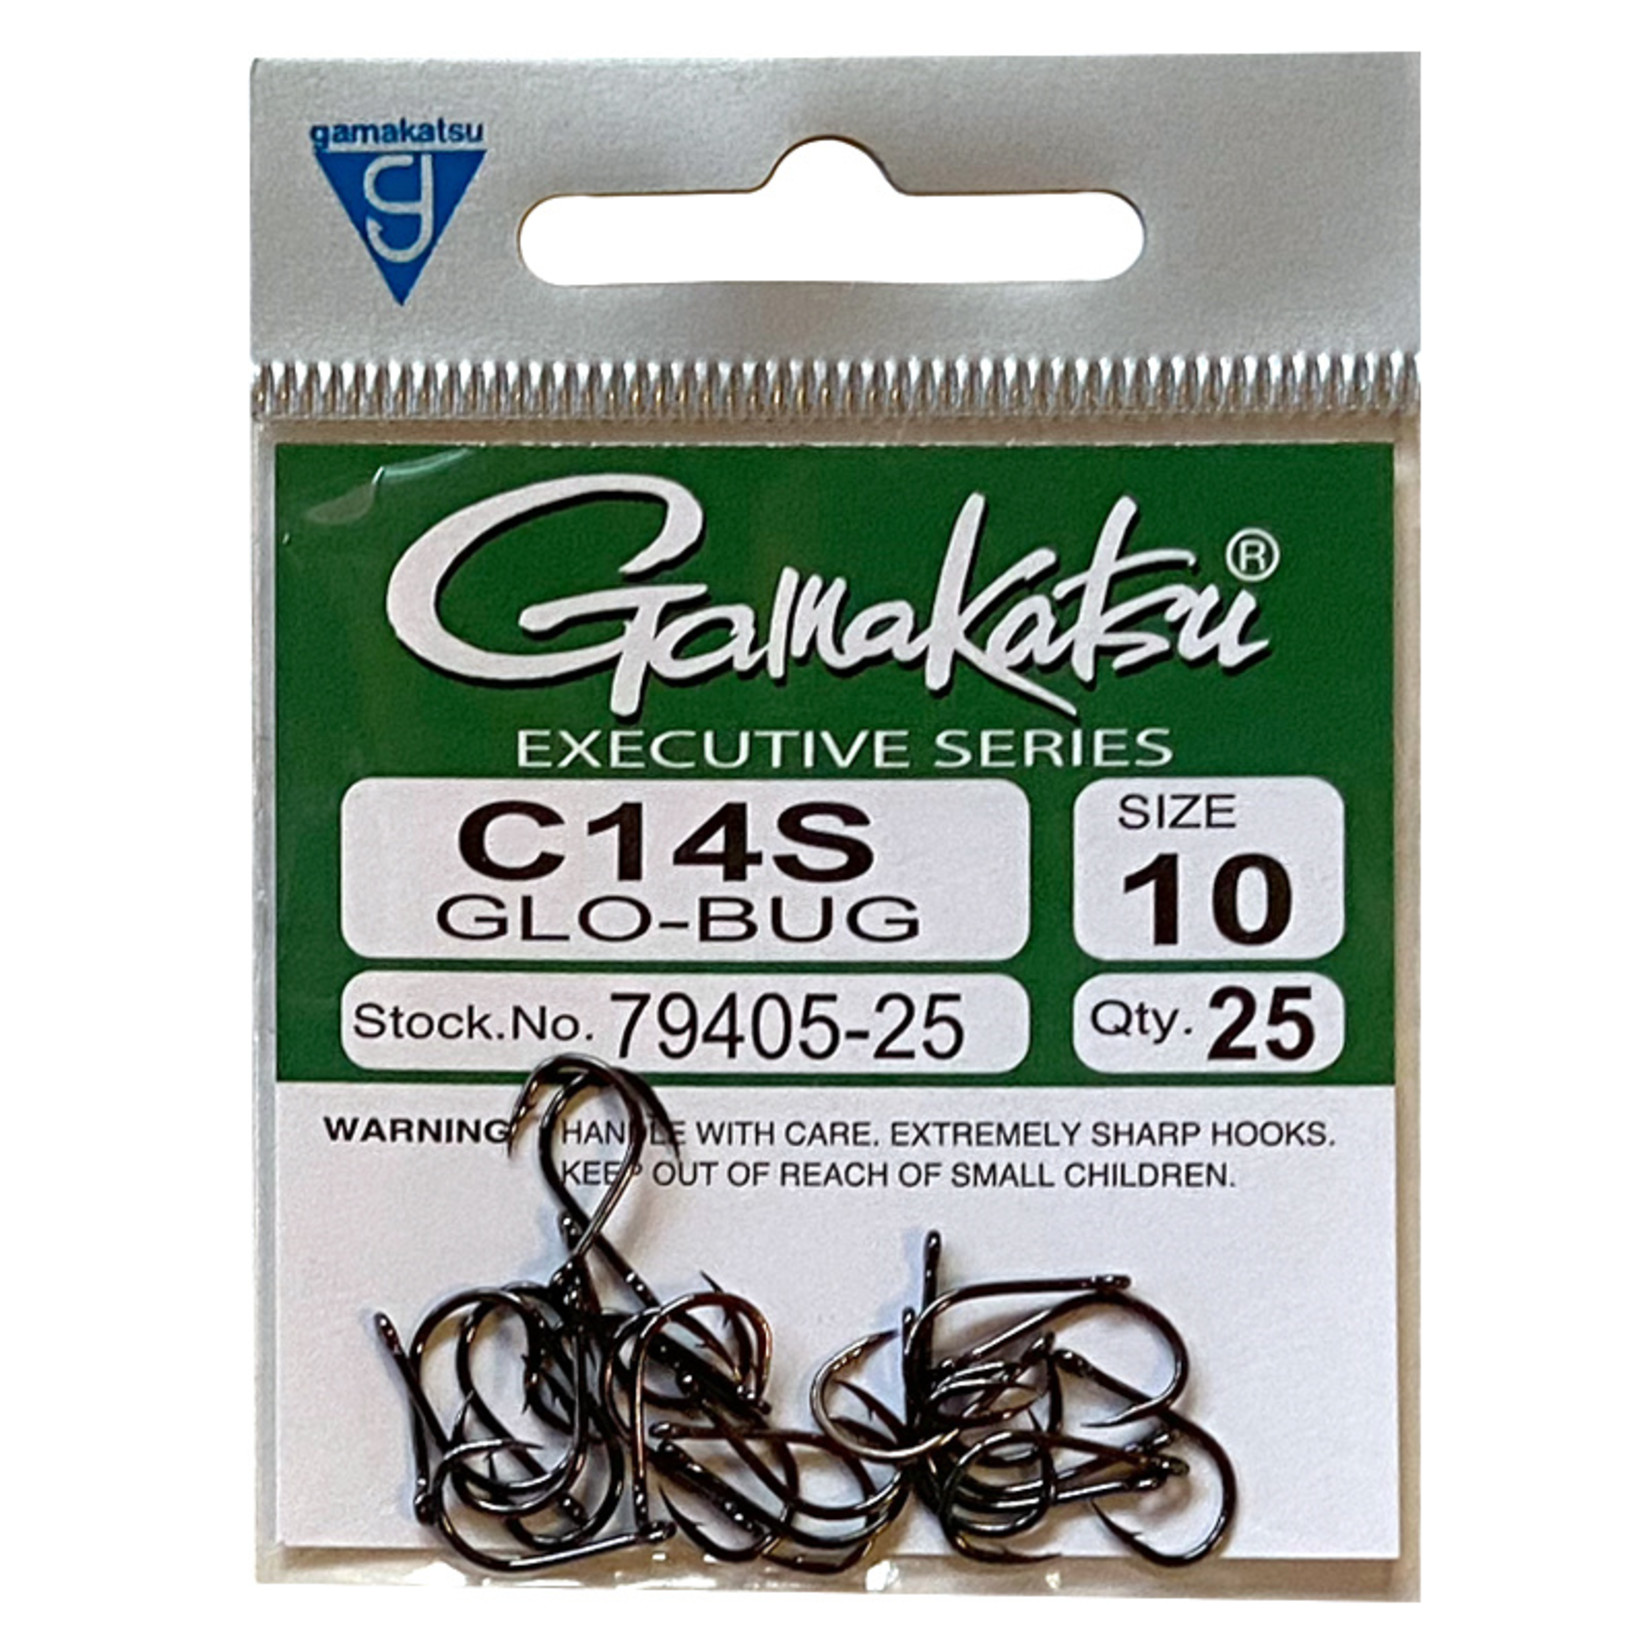 Gamakatsu C14S Glo-bug Hook